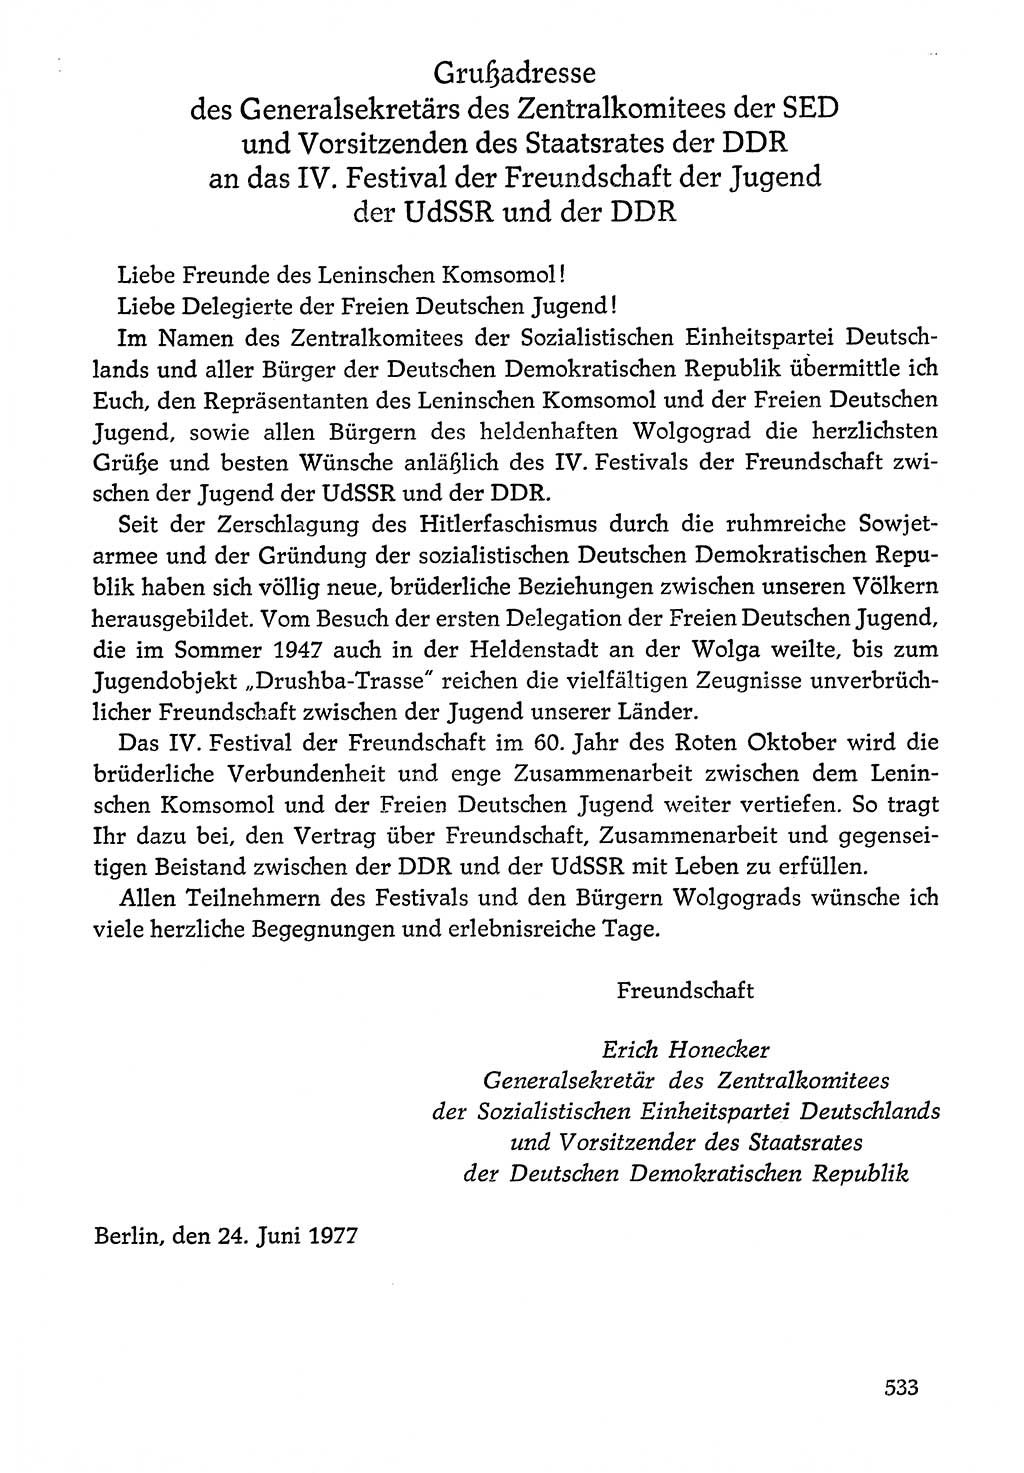 Dokumente der Sozialistischen Einheitspartei Deutschlands (SED) [Deutsche Demokratische Republik (DDR)] 1976-1977, Seite 533 (Dok. SED DDR 1976-1977, S. 533)